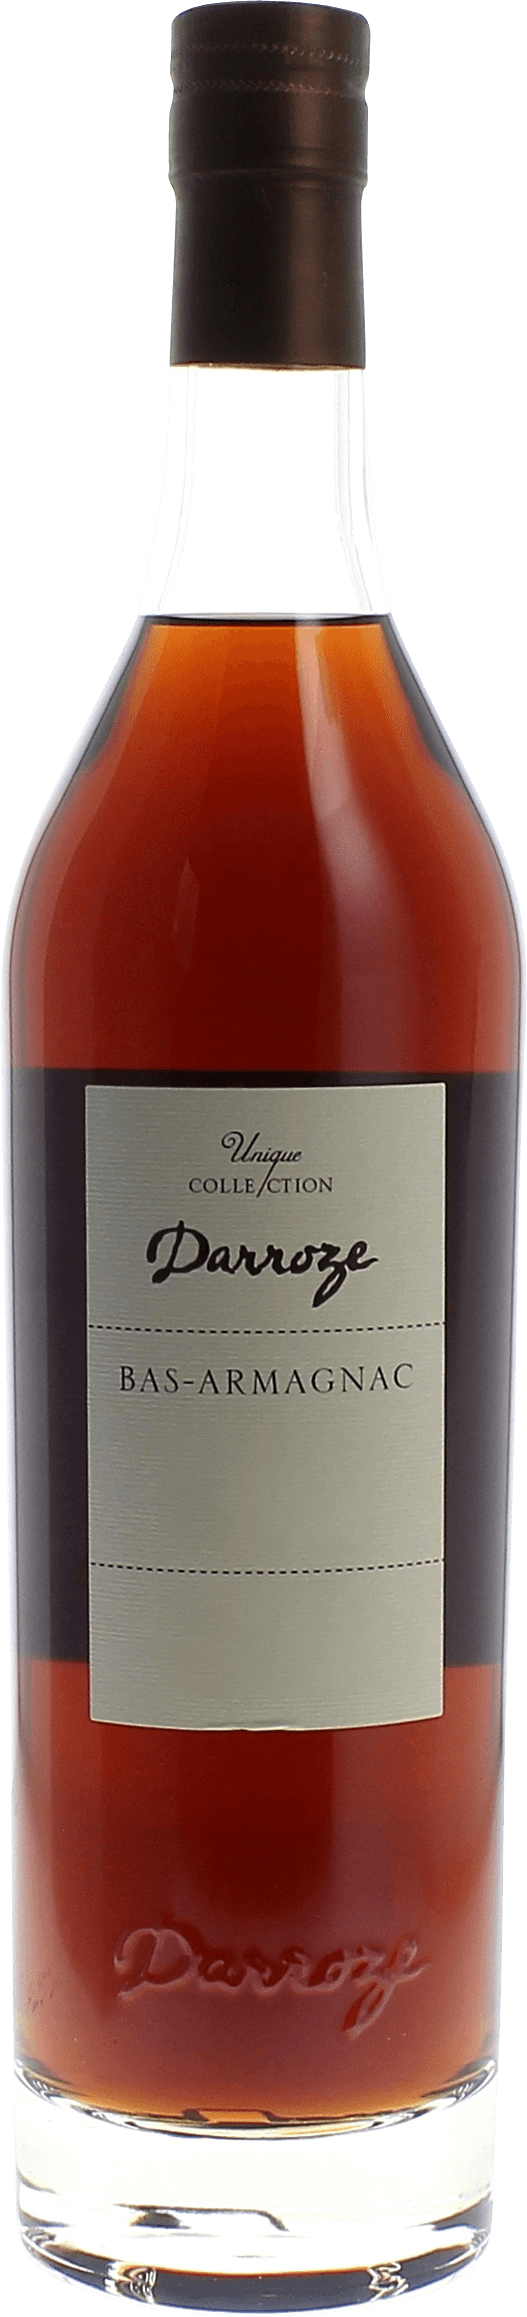 Domaine de bernadotte 43,3 1973  Bas Armagnac, DARROZE  Francis Bas Armagnac